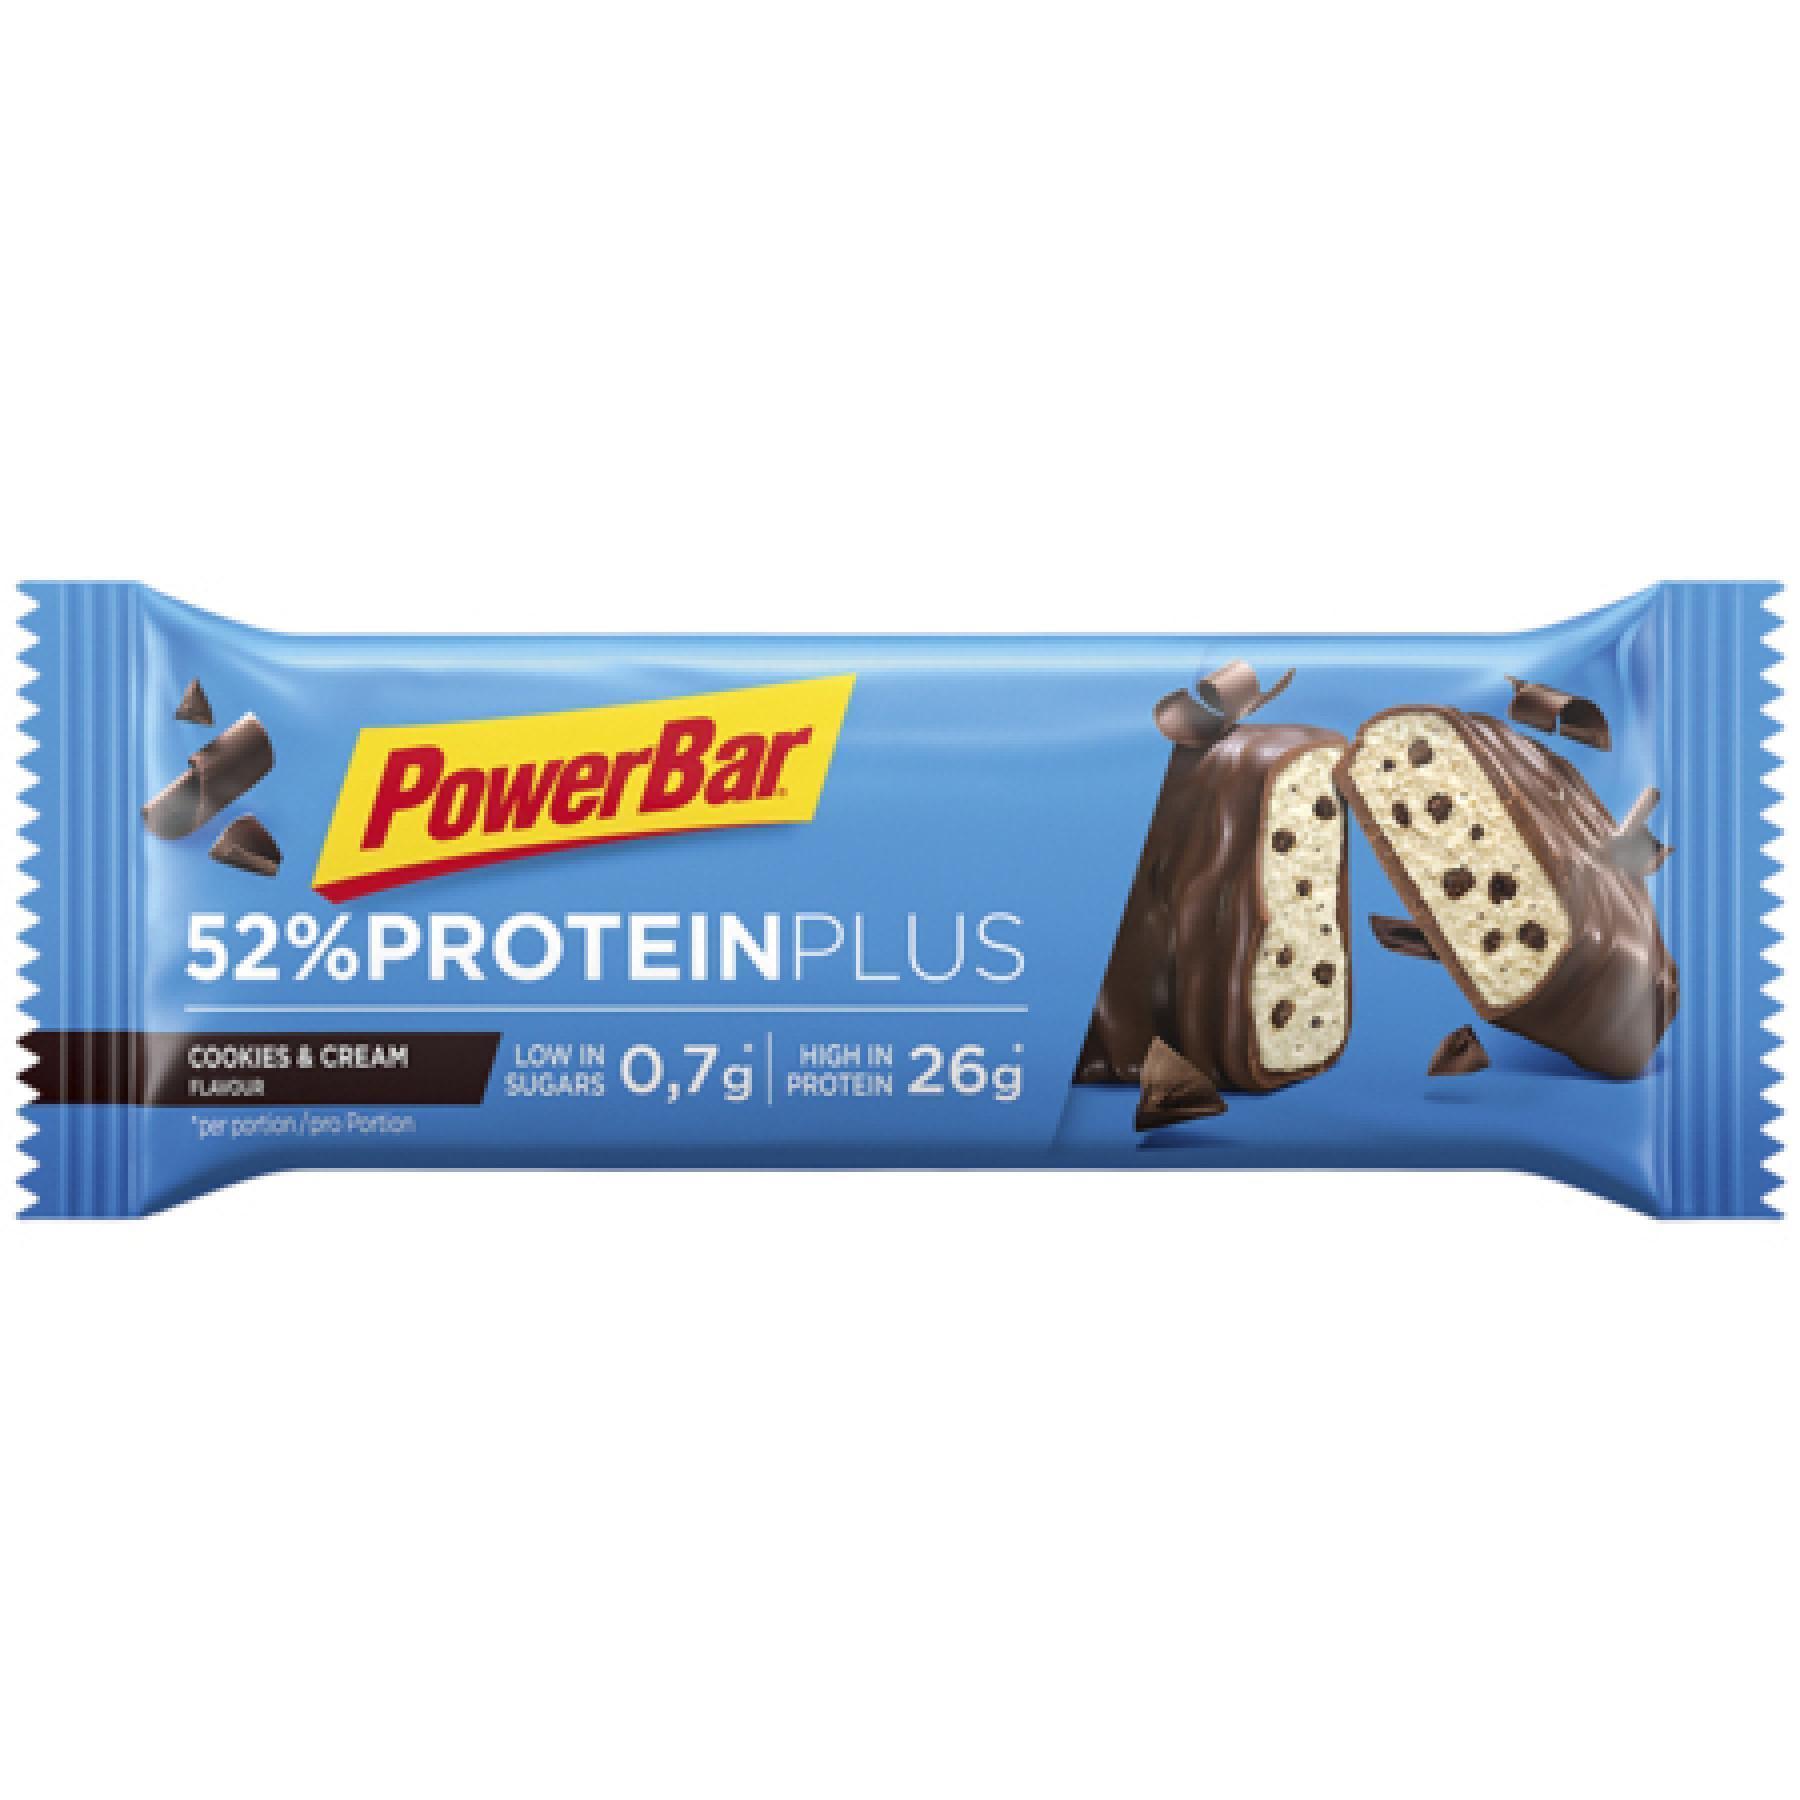 Lot de 20 Barres PowerBar 52% ProteinPlus Low Sugar Cookies & Cream